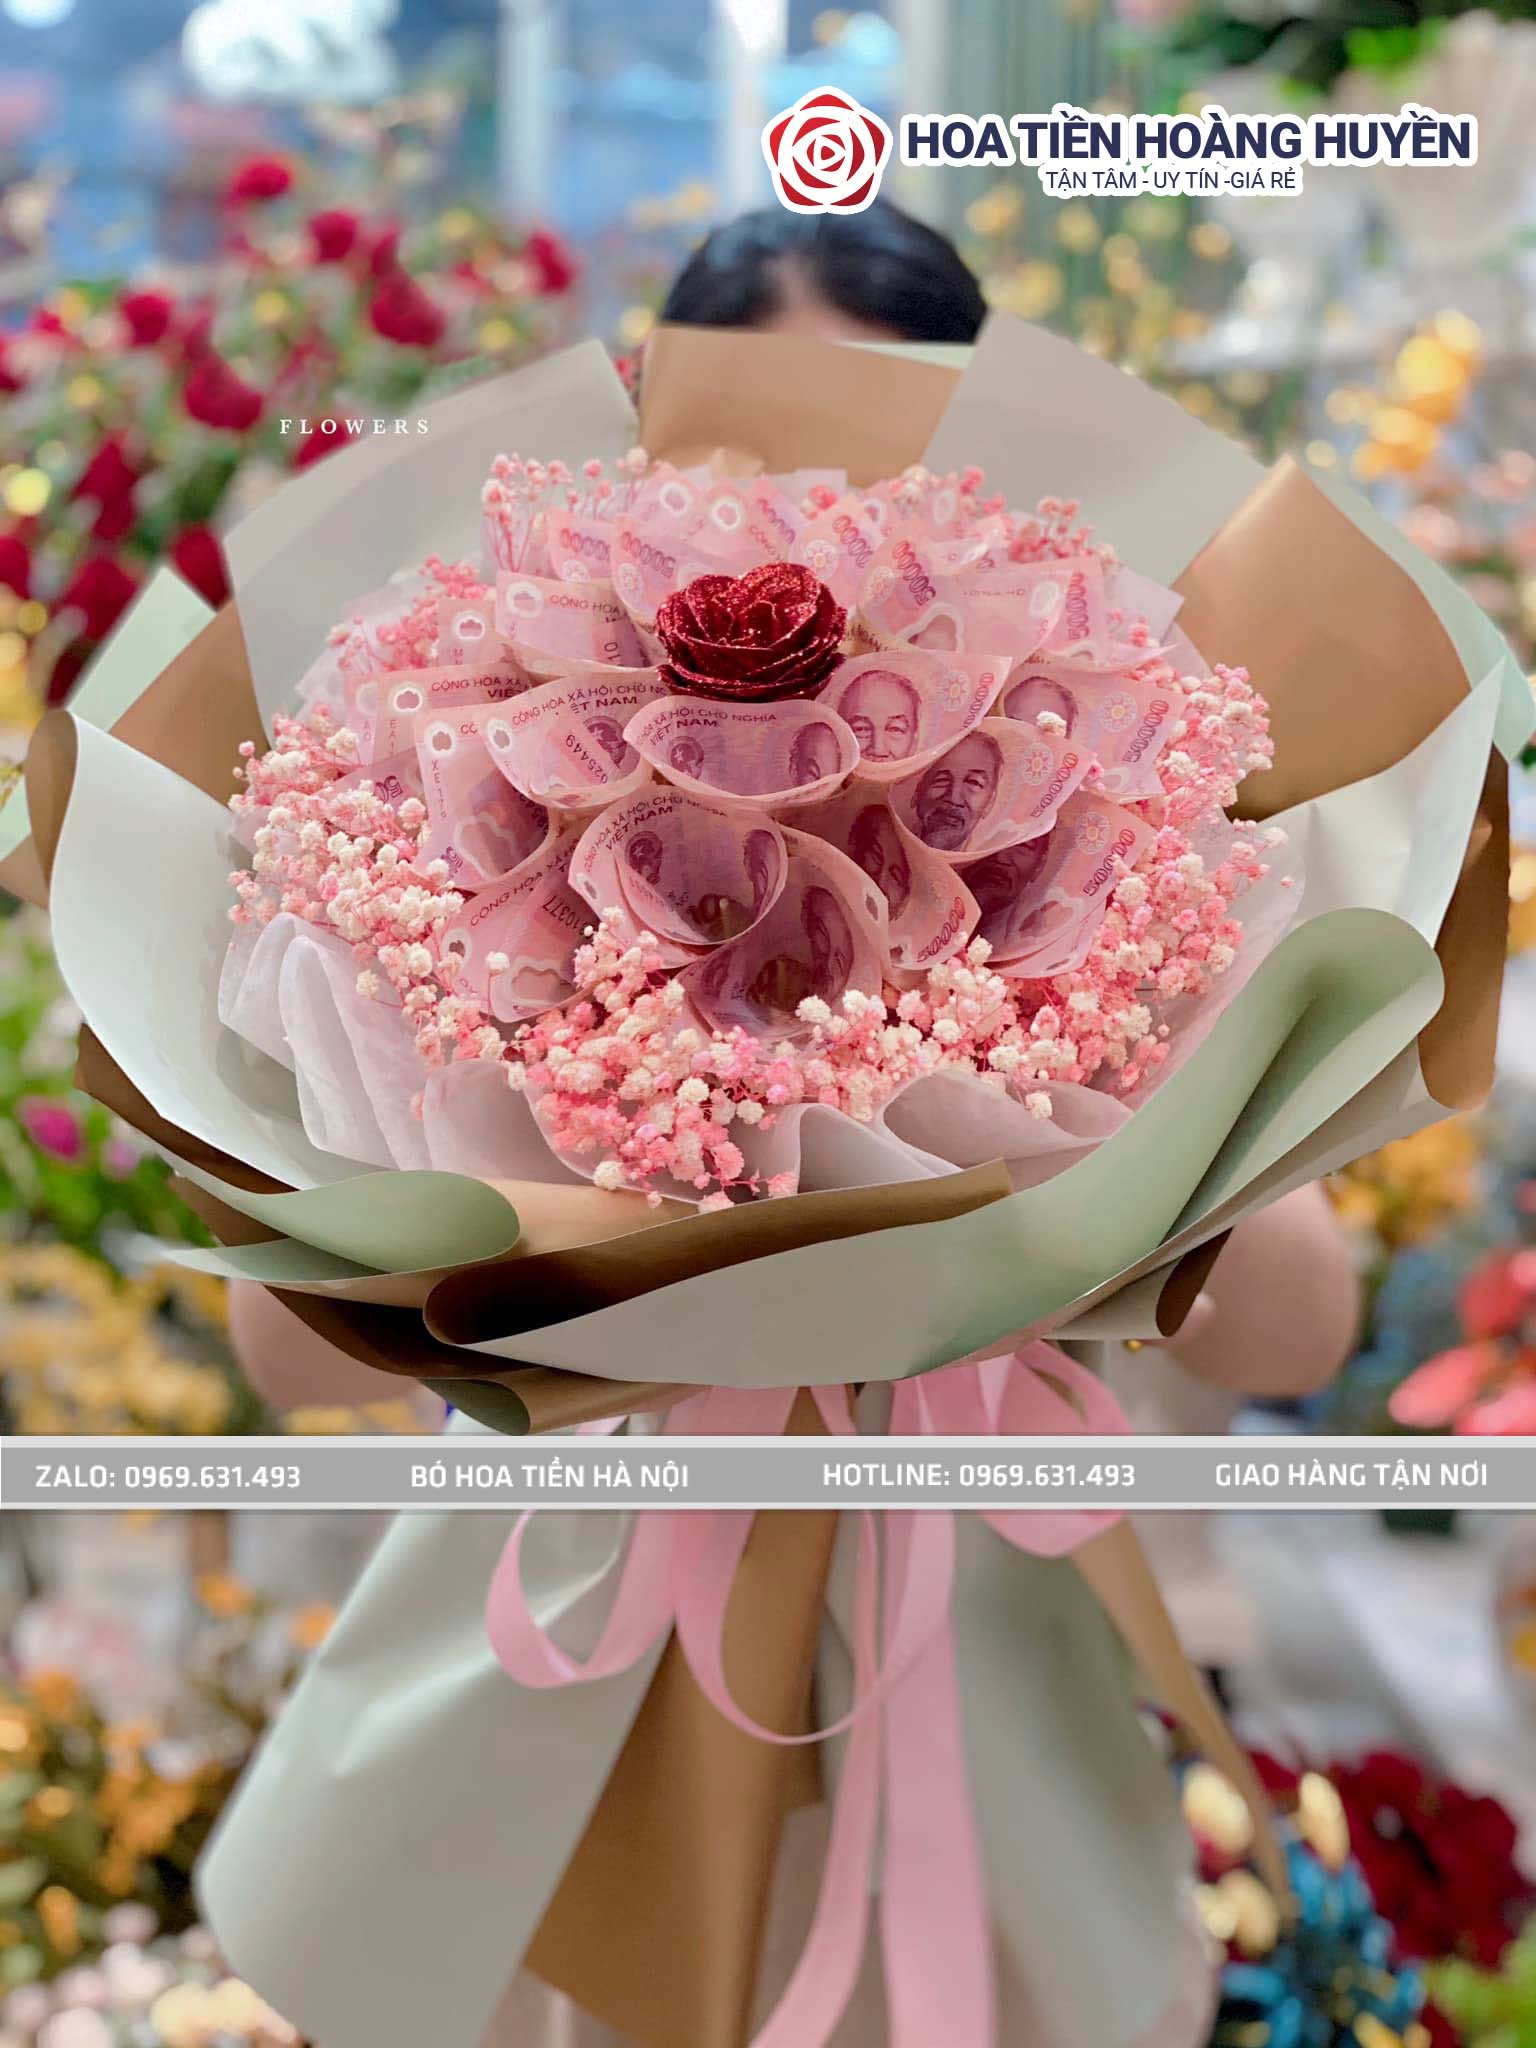 Bó hoa tiền - Bó hoa tiền là một tác phẩm nghệ thuật tuyệt đẹp được tạo ra từ những tờ tiền nhỏ xinh. Hãy thưởng thức hình ảnh bó hoa tiền và chiêm ngưỡng sự tinh xảo của các mẫu hoa này.